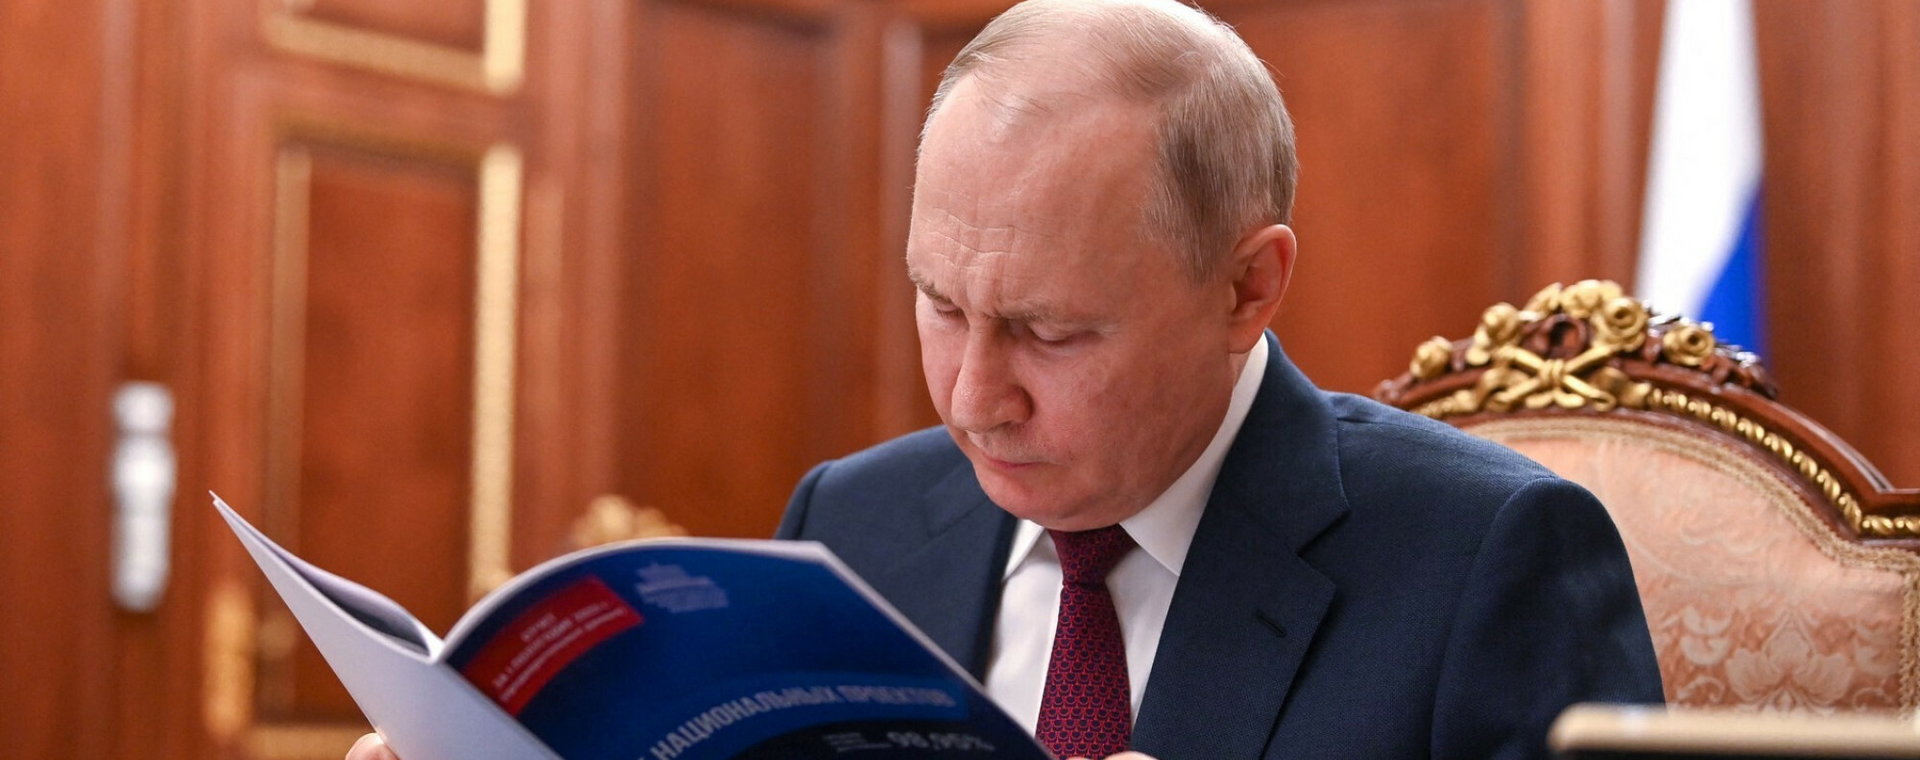 Władimir Putin, prezydent Rosji i ścigany listem gończym Międzynarodowego Trybunału Karnego w Hadze zbrodniarz wojenny